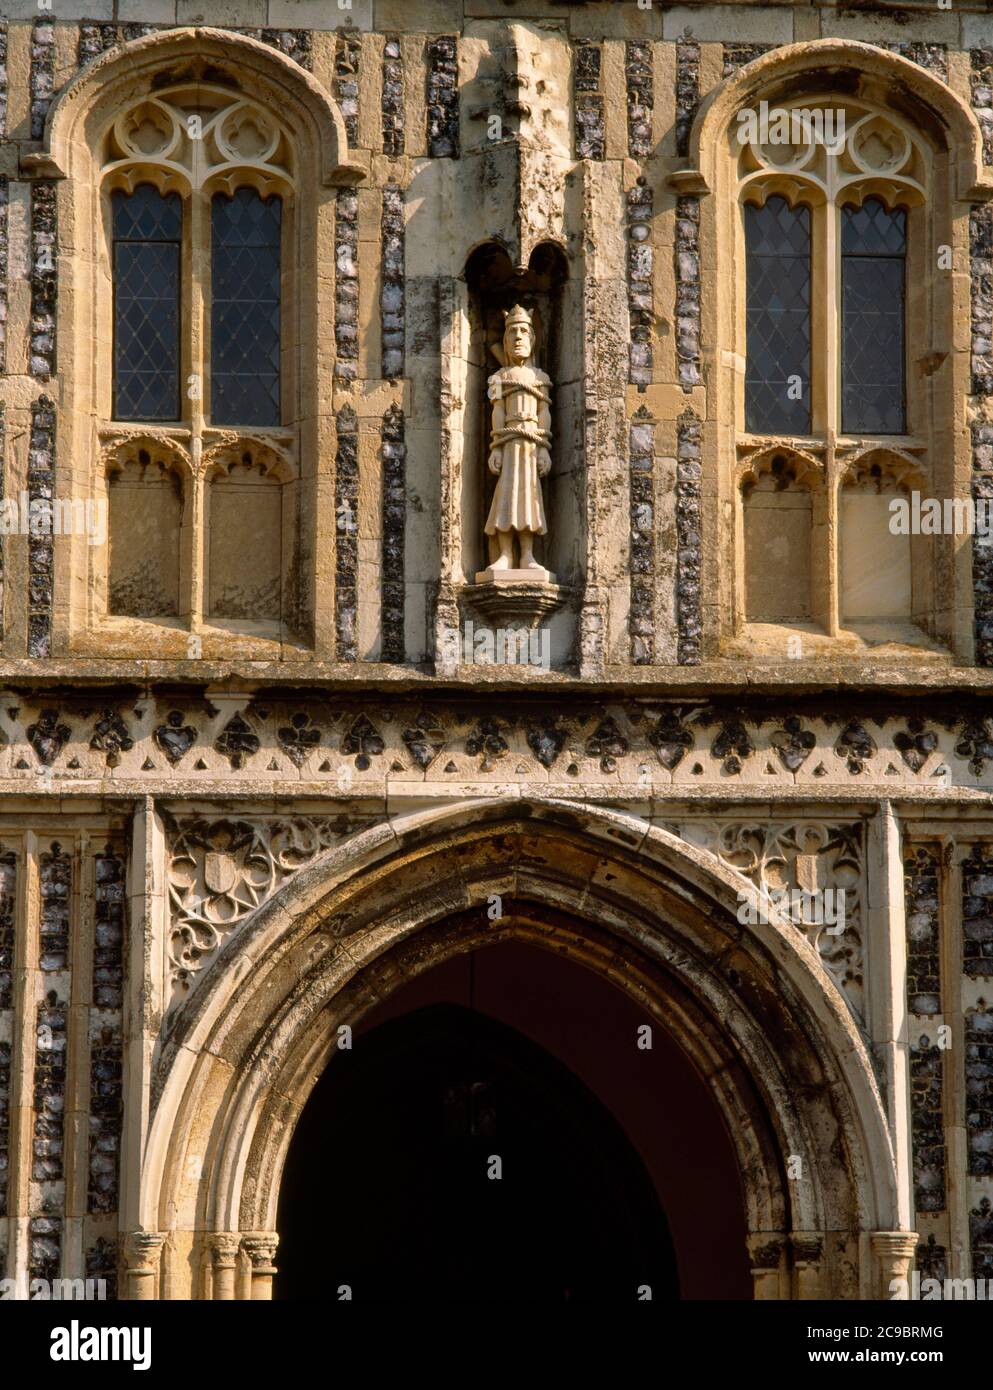 Eine moderne (1989) Statue von St. Edmund in einer überdachter Nische auf der C15. Senkrechten zweistöckigen S Veranda seiner Kirche in Southwold, Suffolk, England, Großbritannien Stockfoto